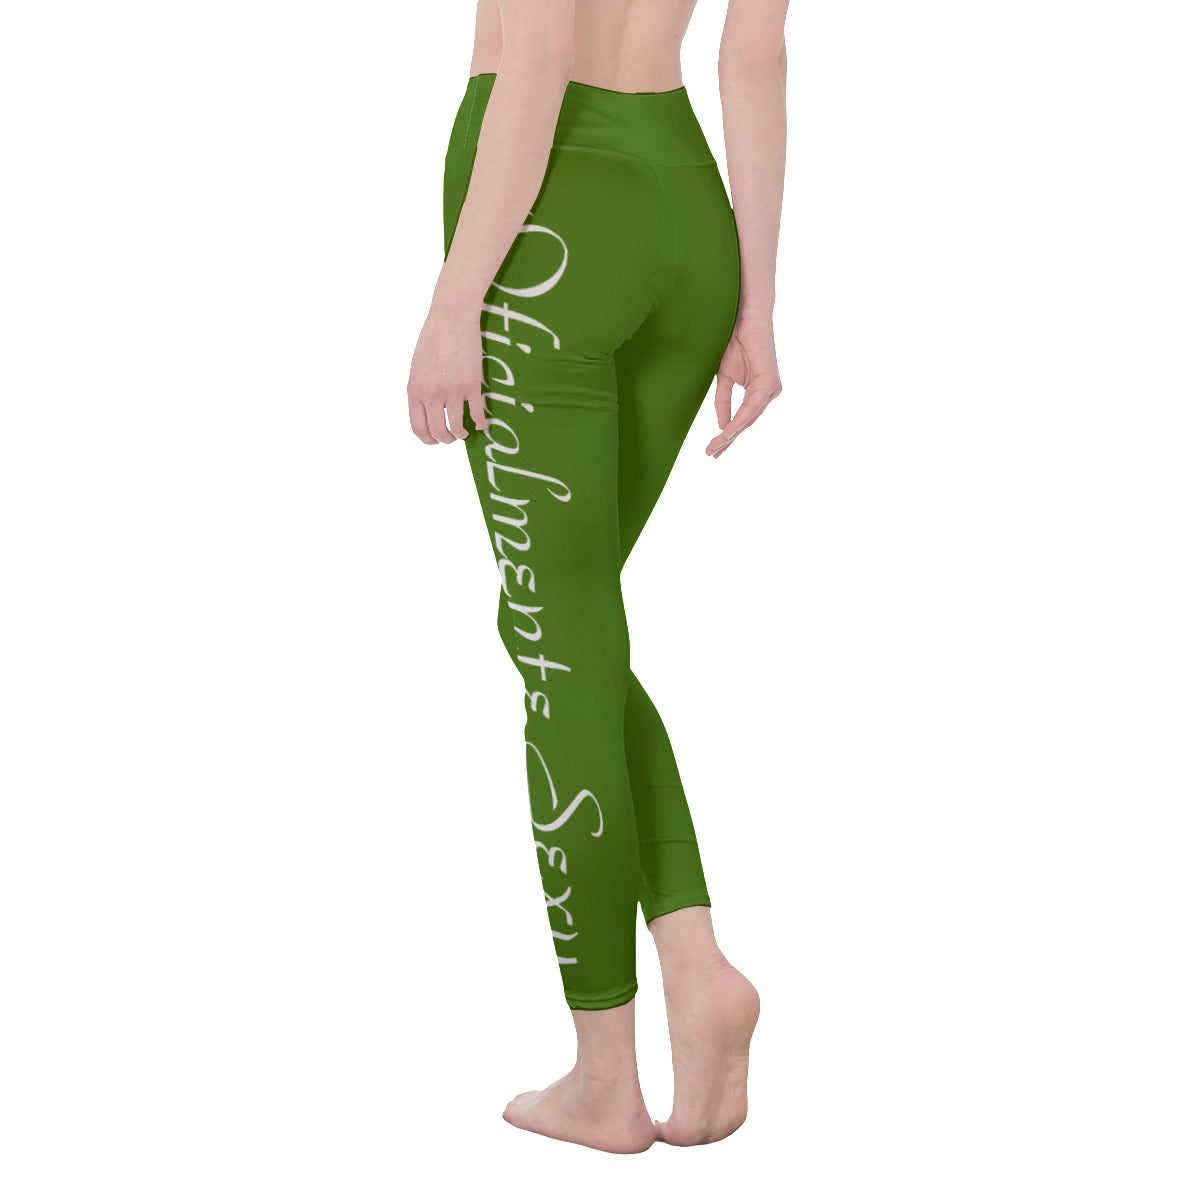 👖 Oficialmente Sexy Colors Collection Atlantis Green With White Logo Women's High Waist Leggings Color #417505 👖